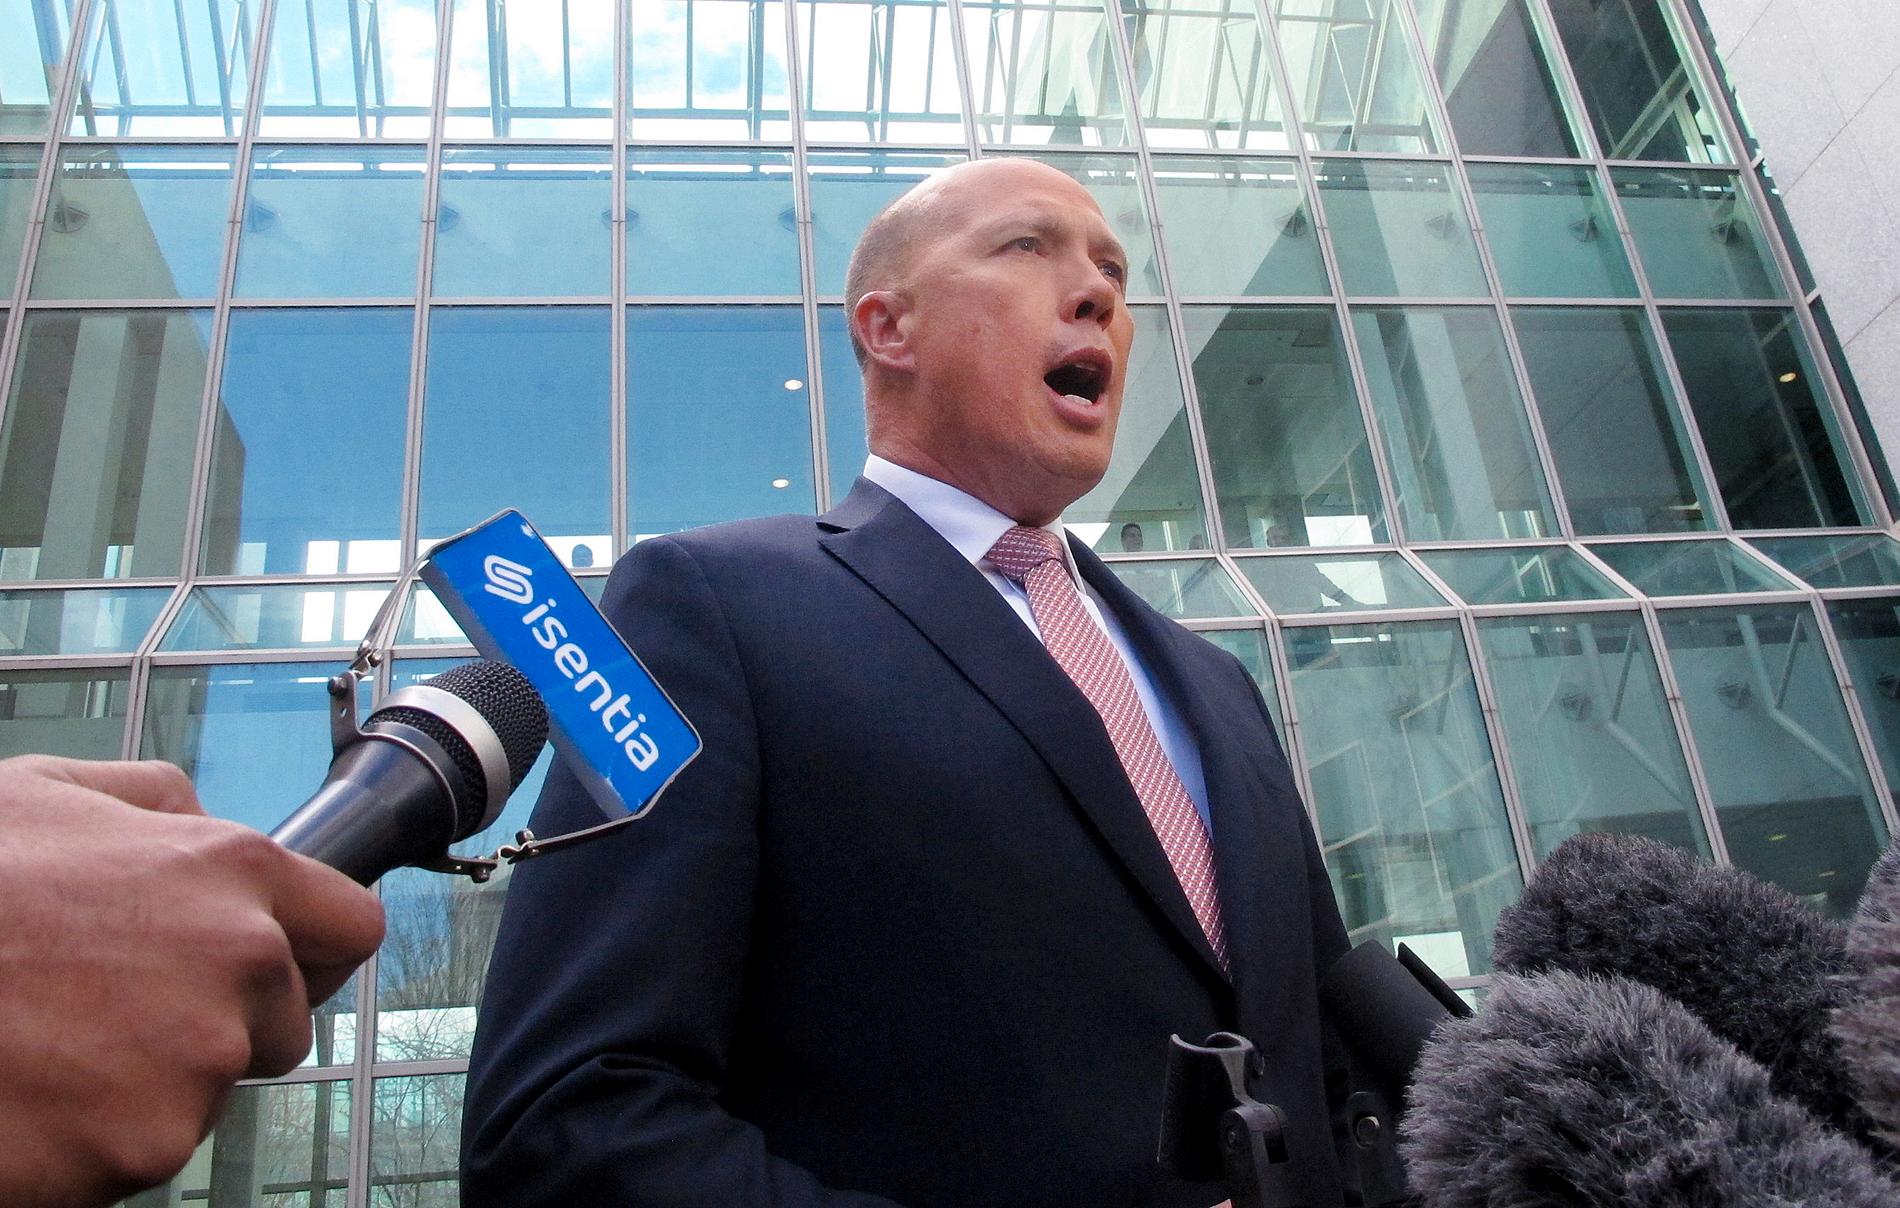 Australiens tidigare inrikesminister Peter Dutton, som utmanat Malcolm Turnbull om premiärministerposten, uttalar sig inför medier i Canberra på tisdagen.